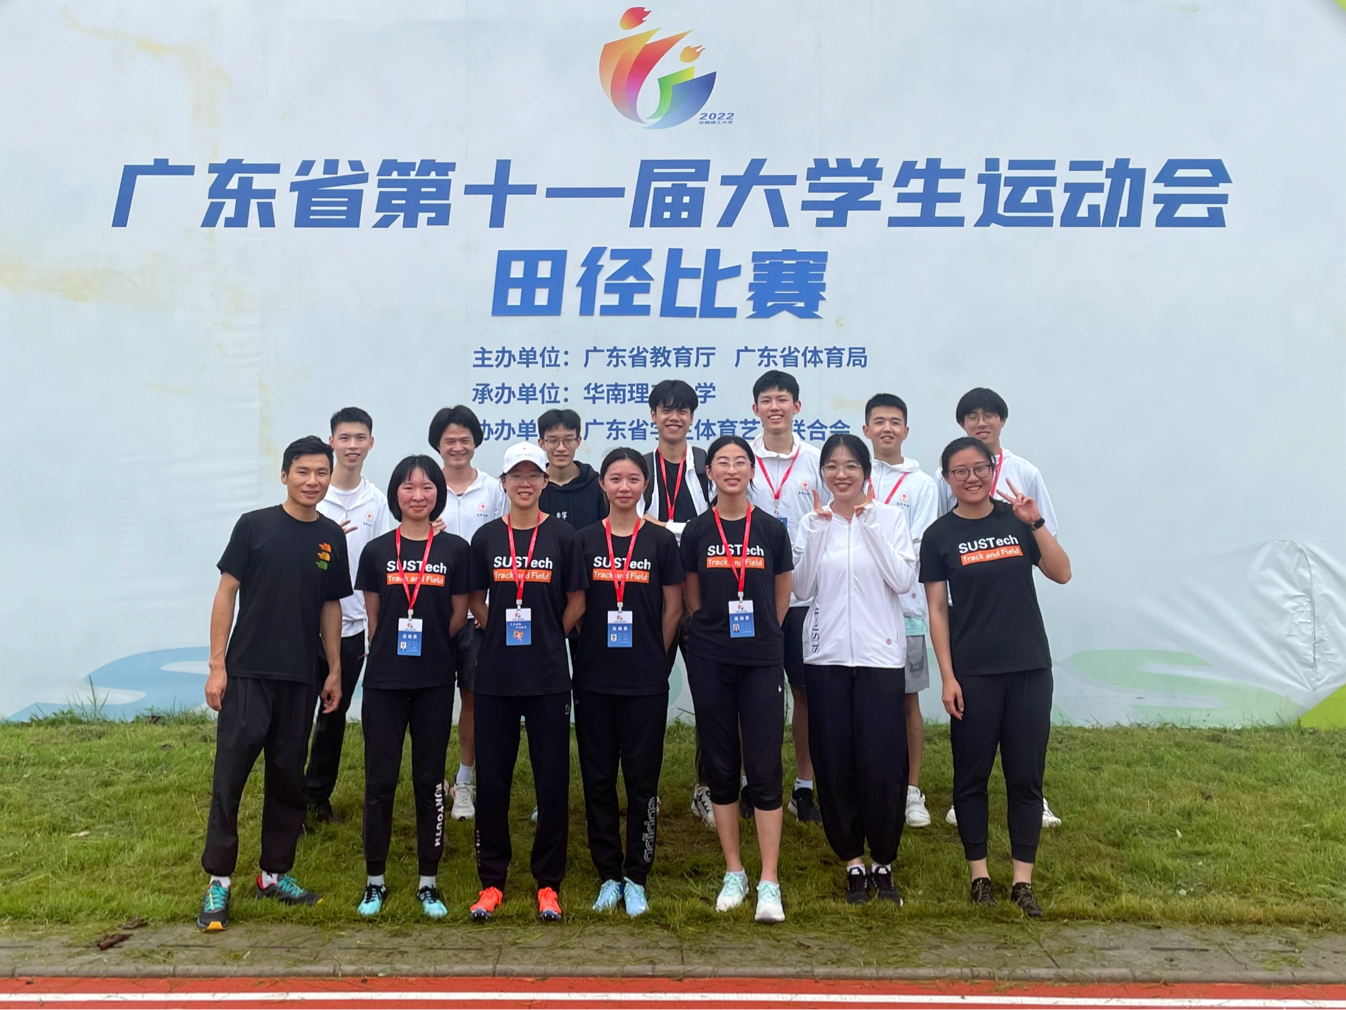 我校田径代表队在第十一届省大学生运动会田径比赛创佳绩